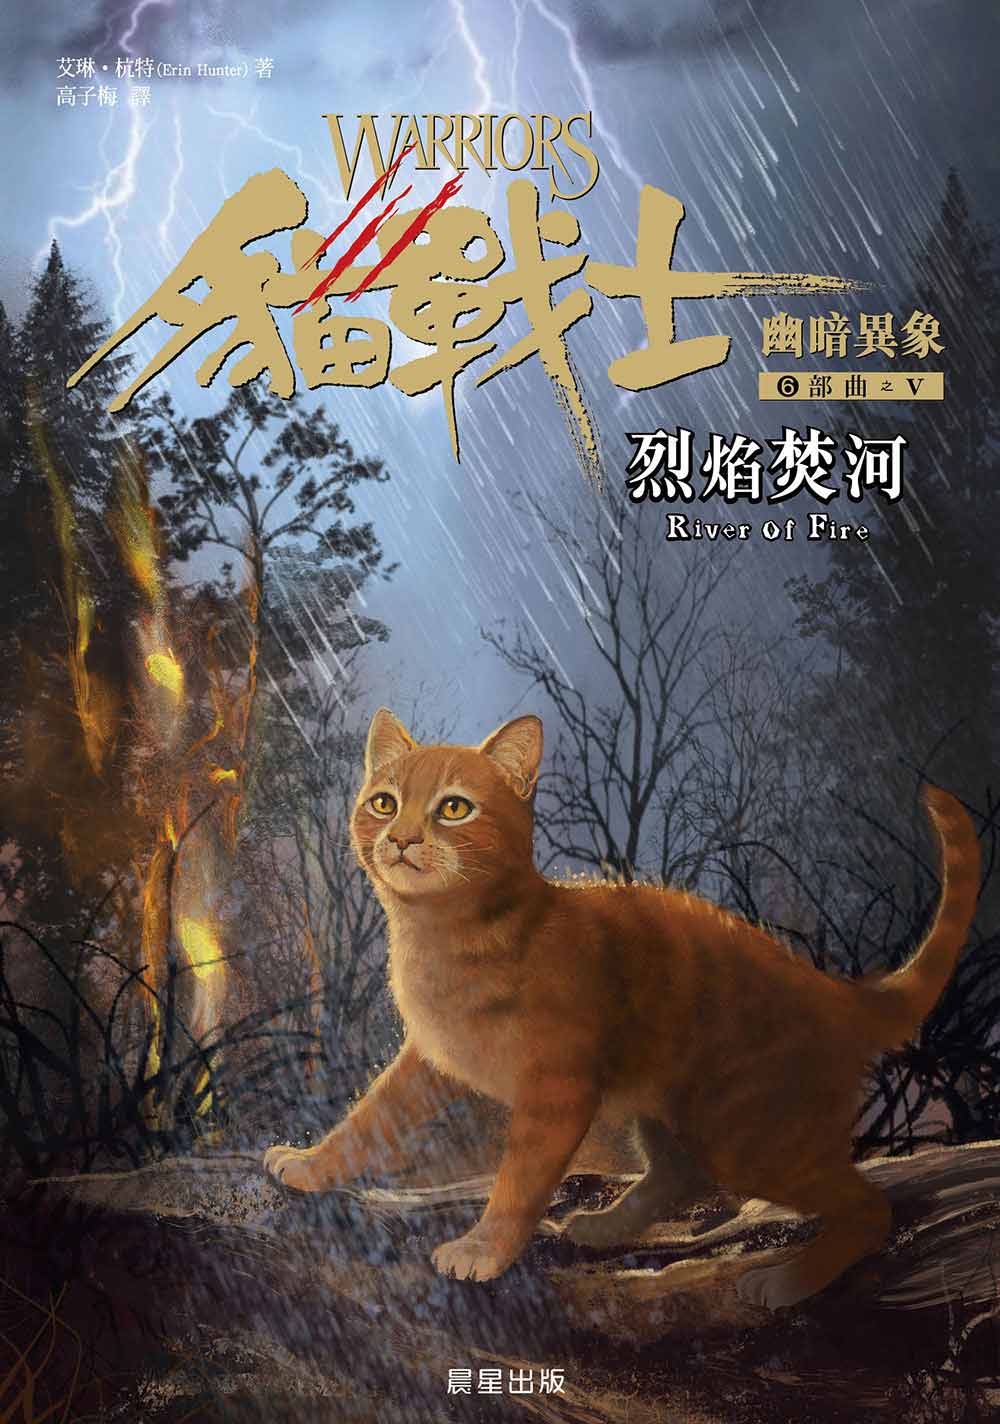 貓戰士幽暗異象6部曲(V) : 烈焰焚河